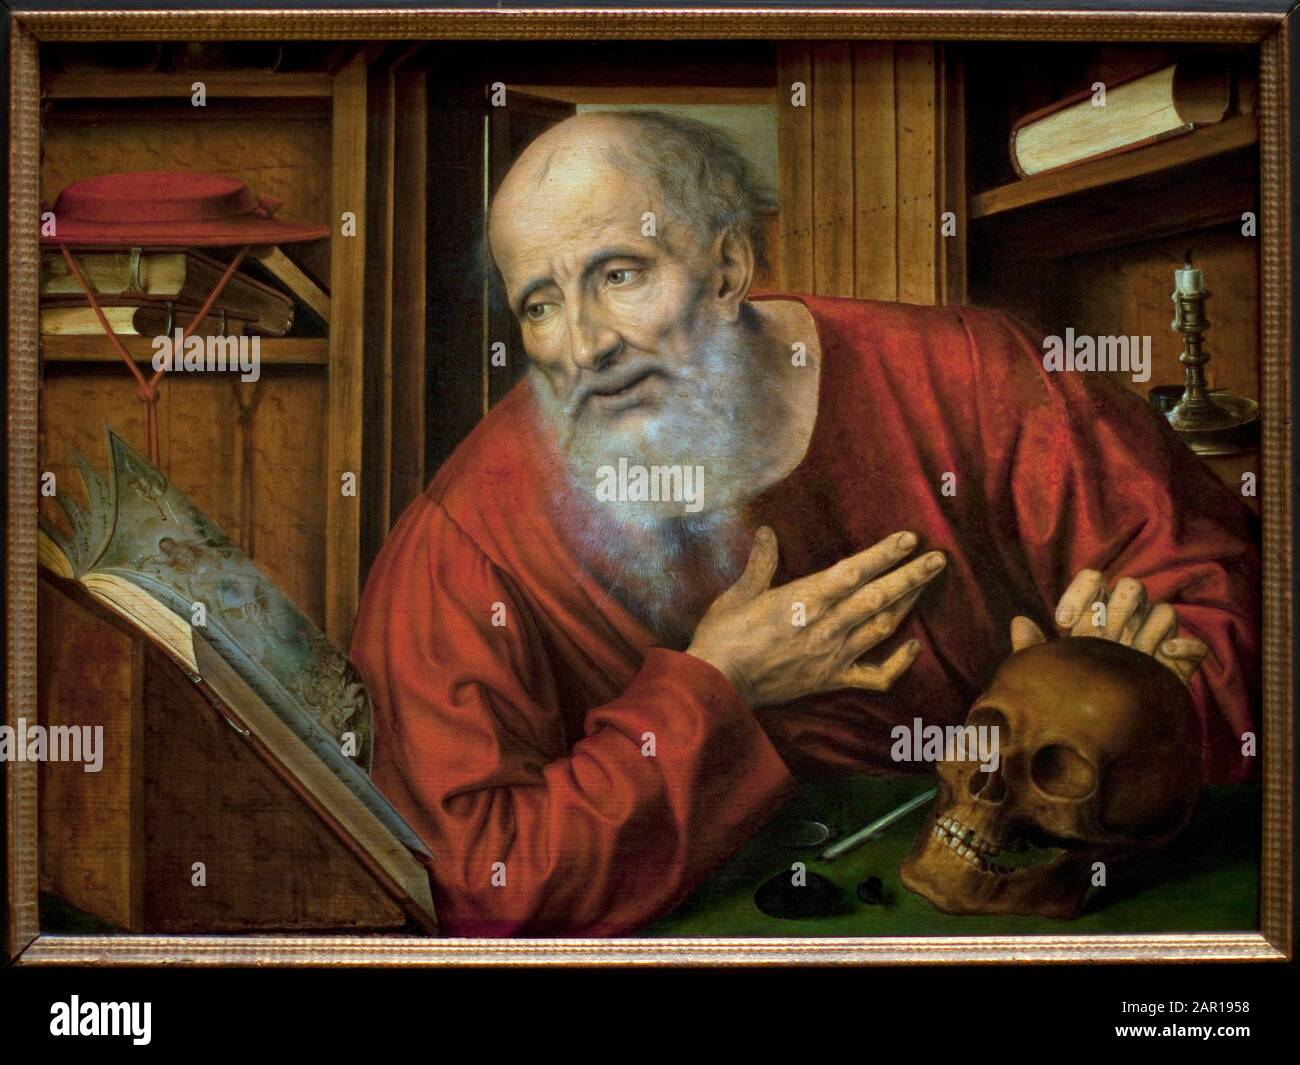 Der heilige Jerome dans sa cellule. Peinture de Quentin Metsys (Quinten Massys) (1466-1530), Premiere moitie du 16e siecle, Art primitif flamand. Kunsthisto Stockfoto